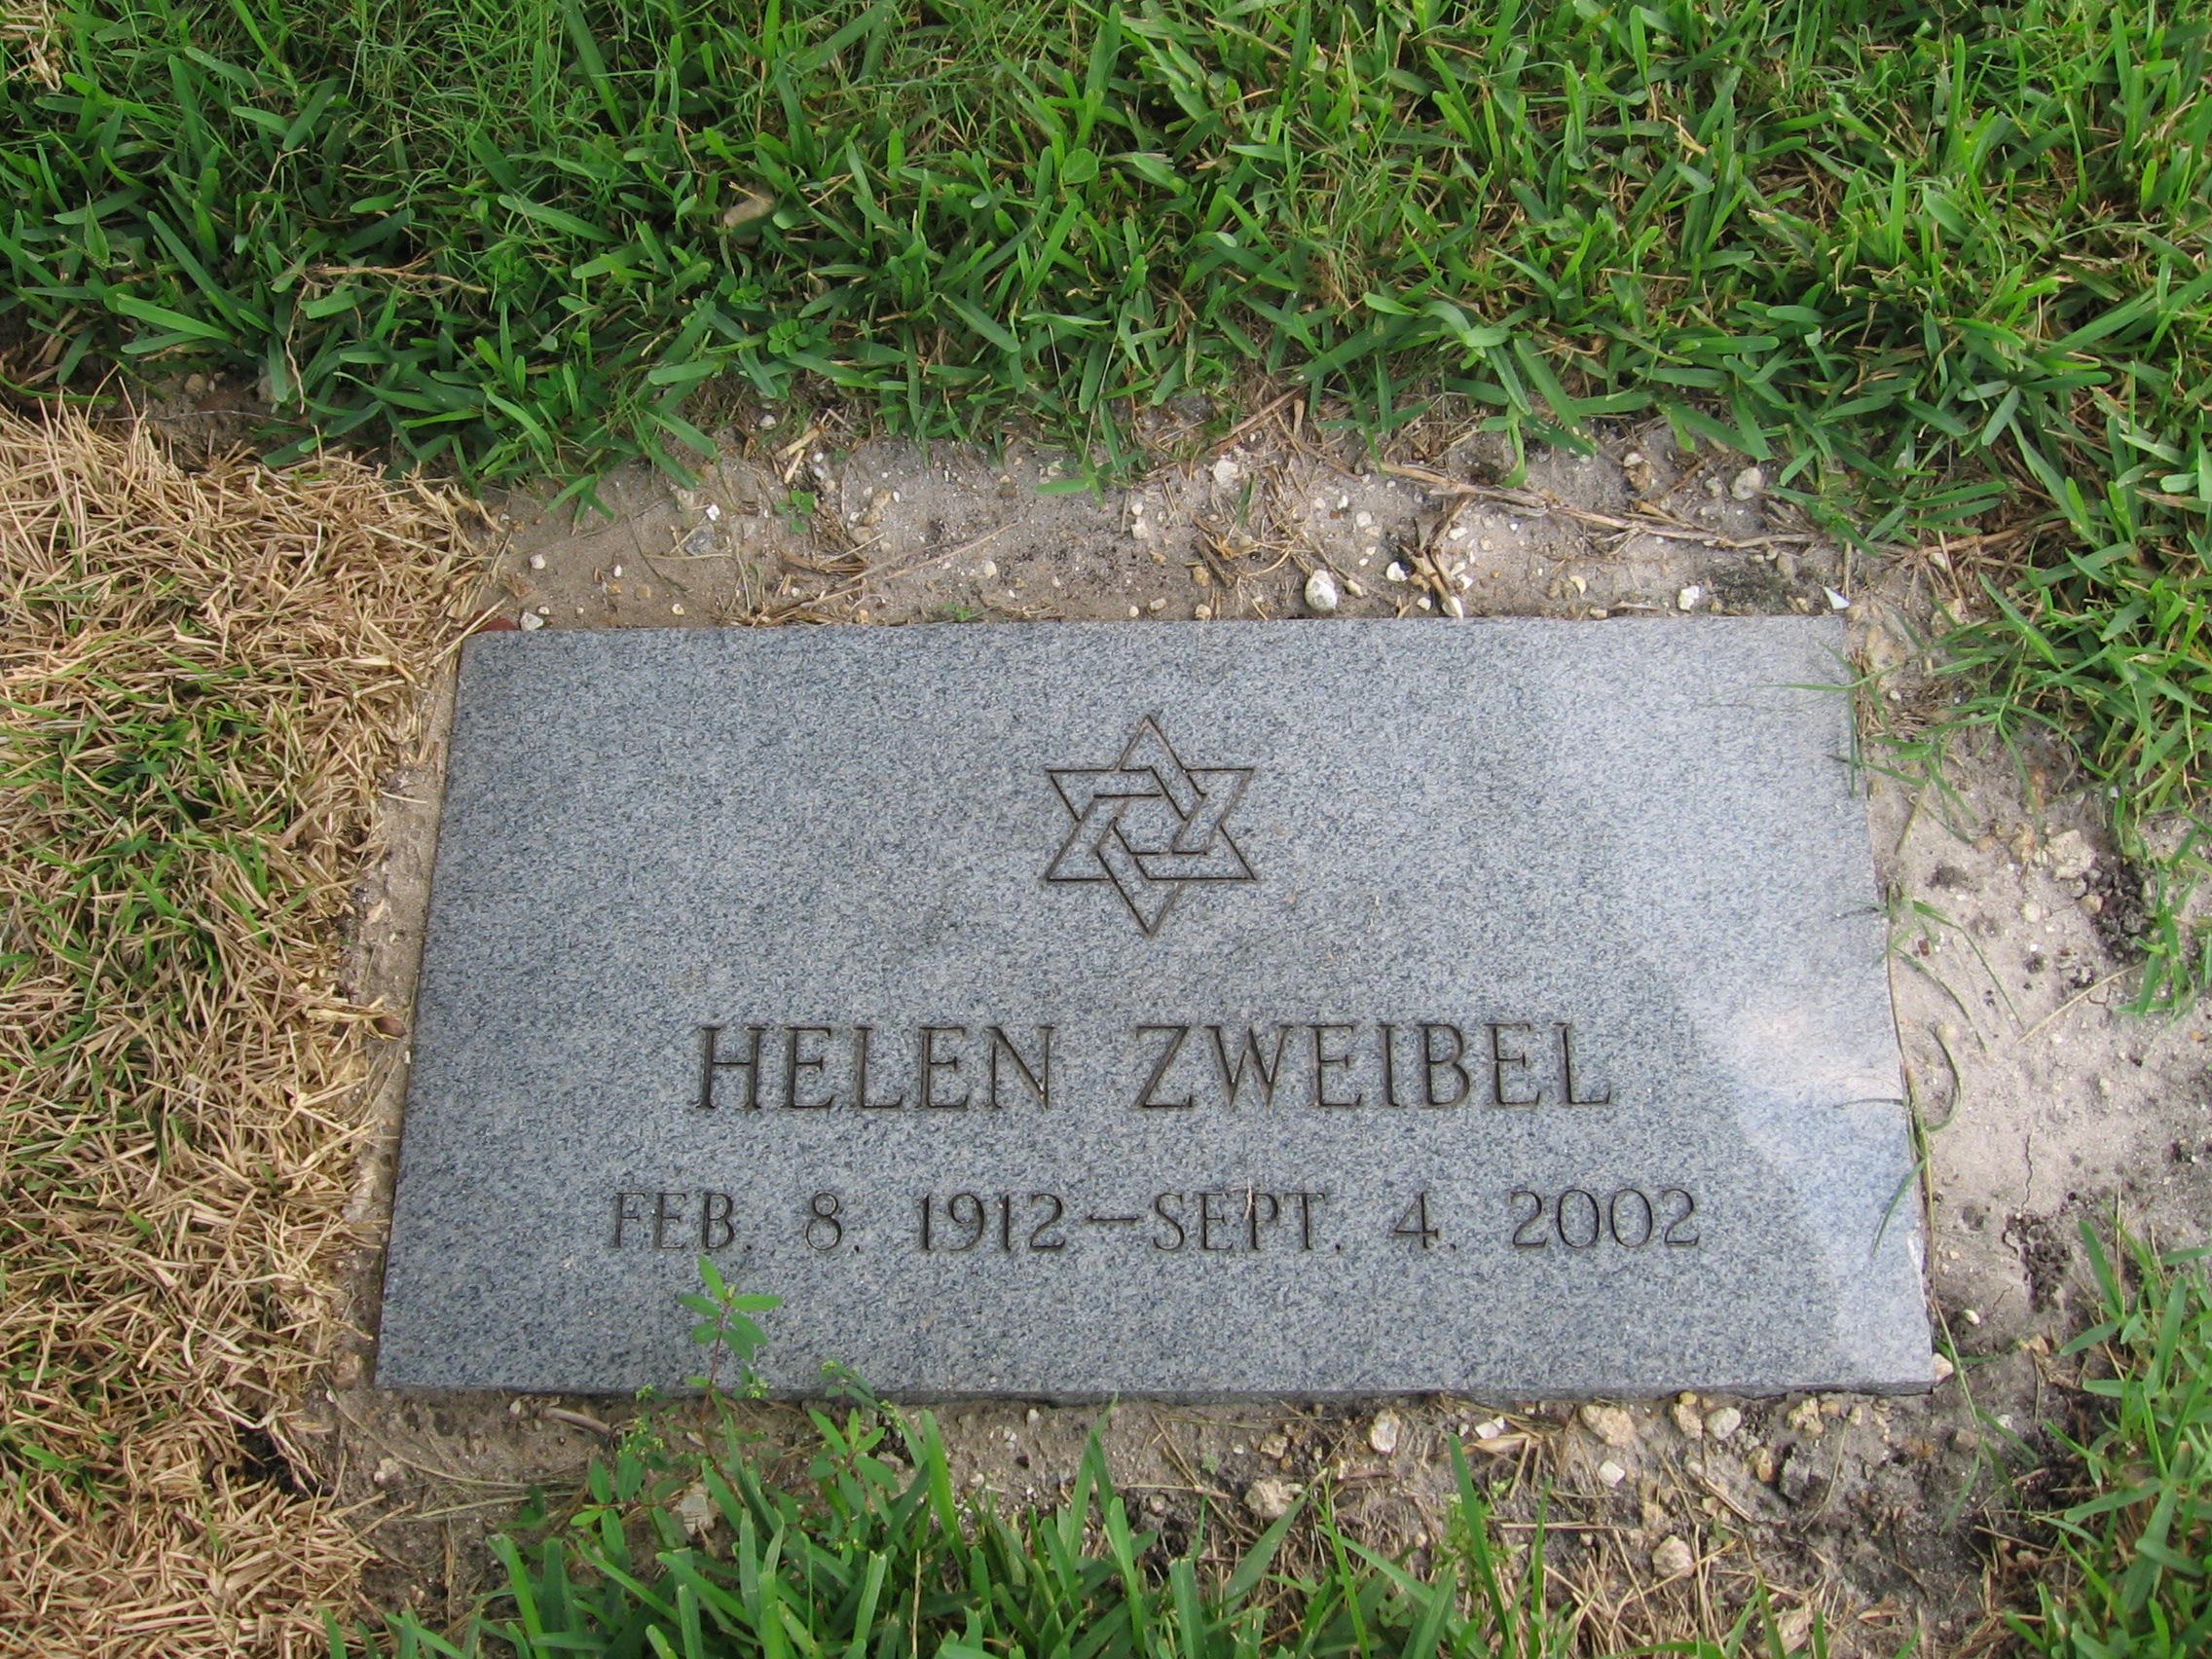 Helen Zweibel